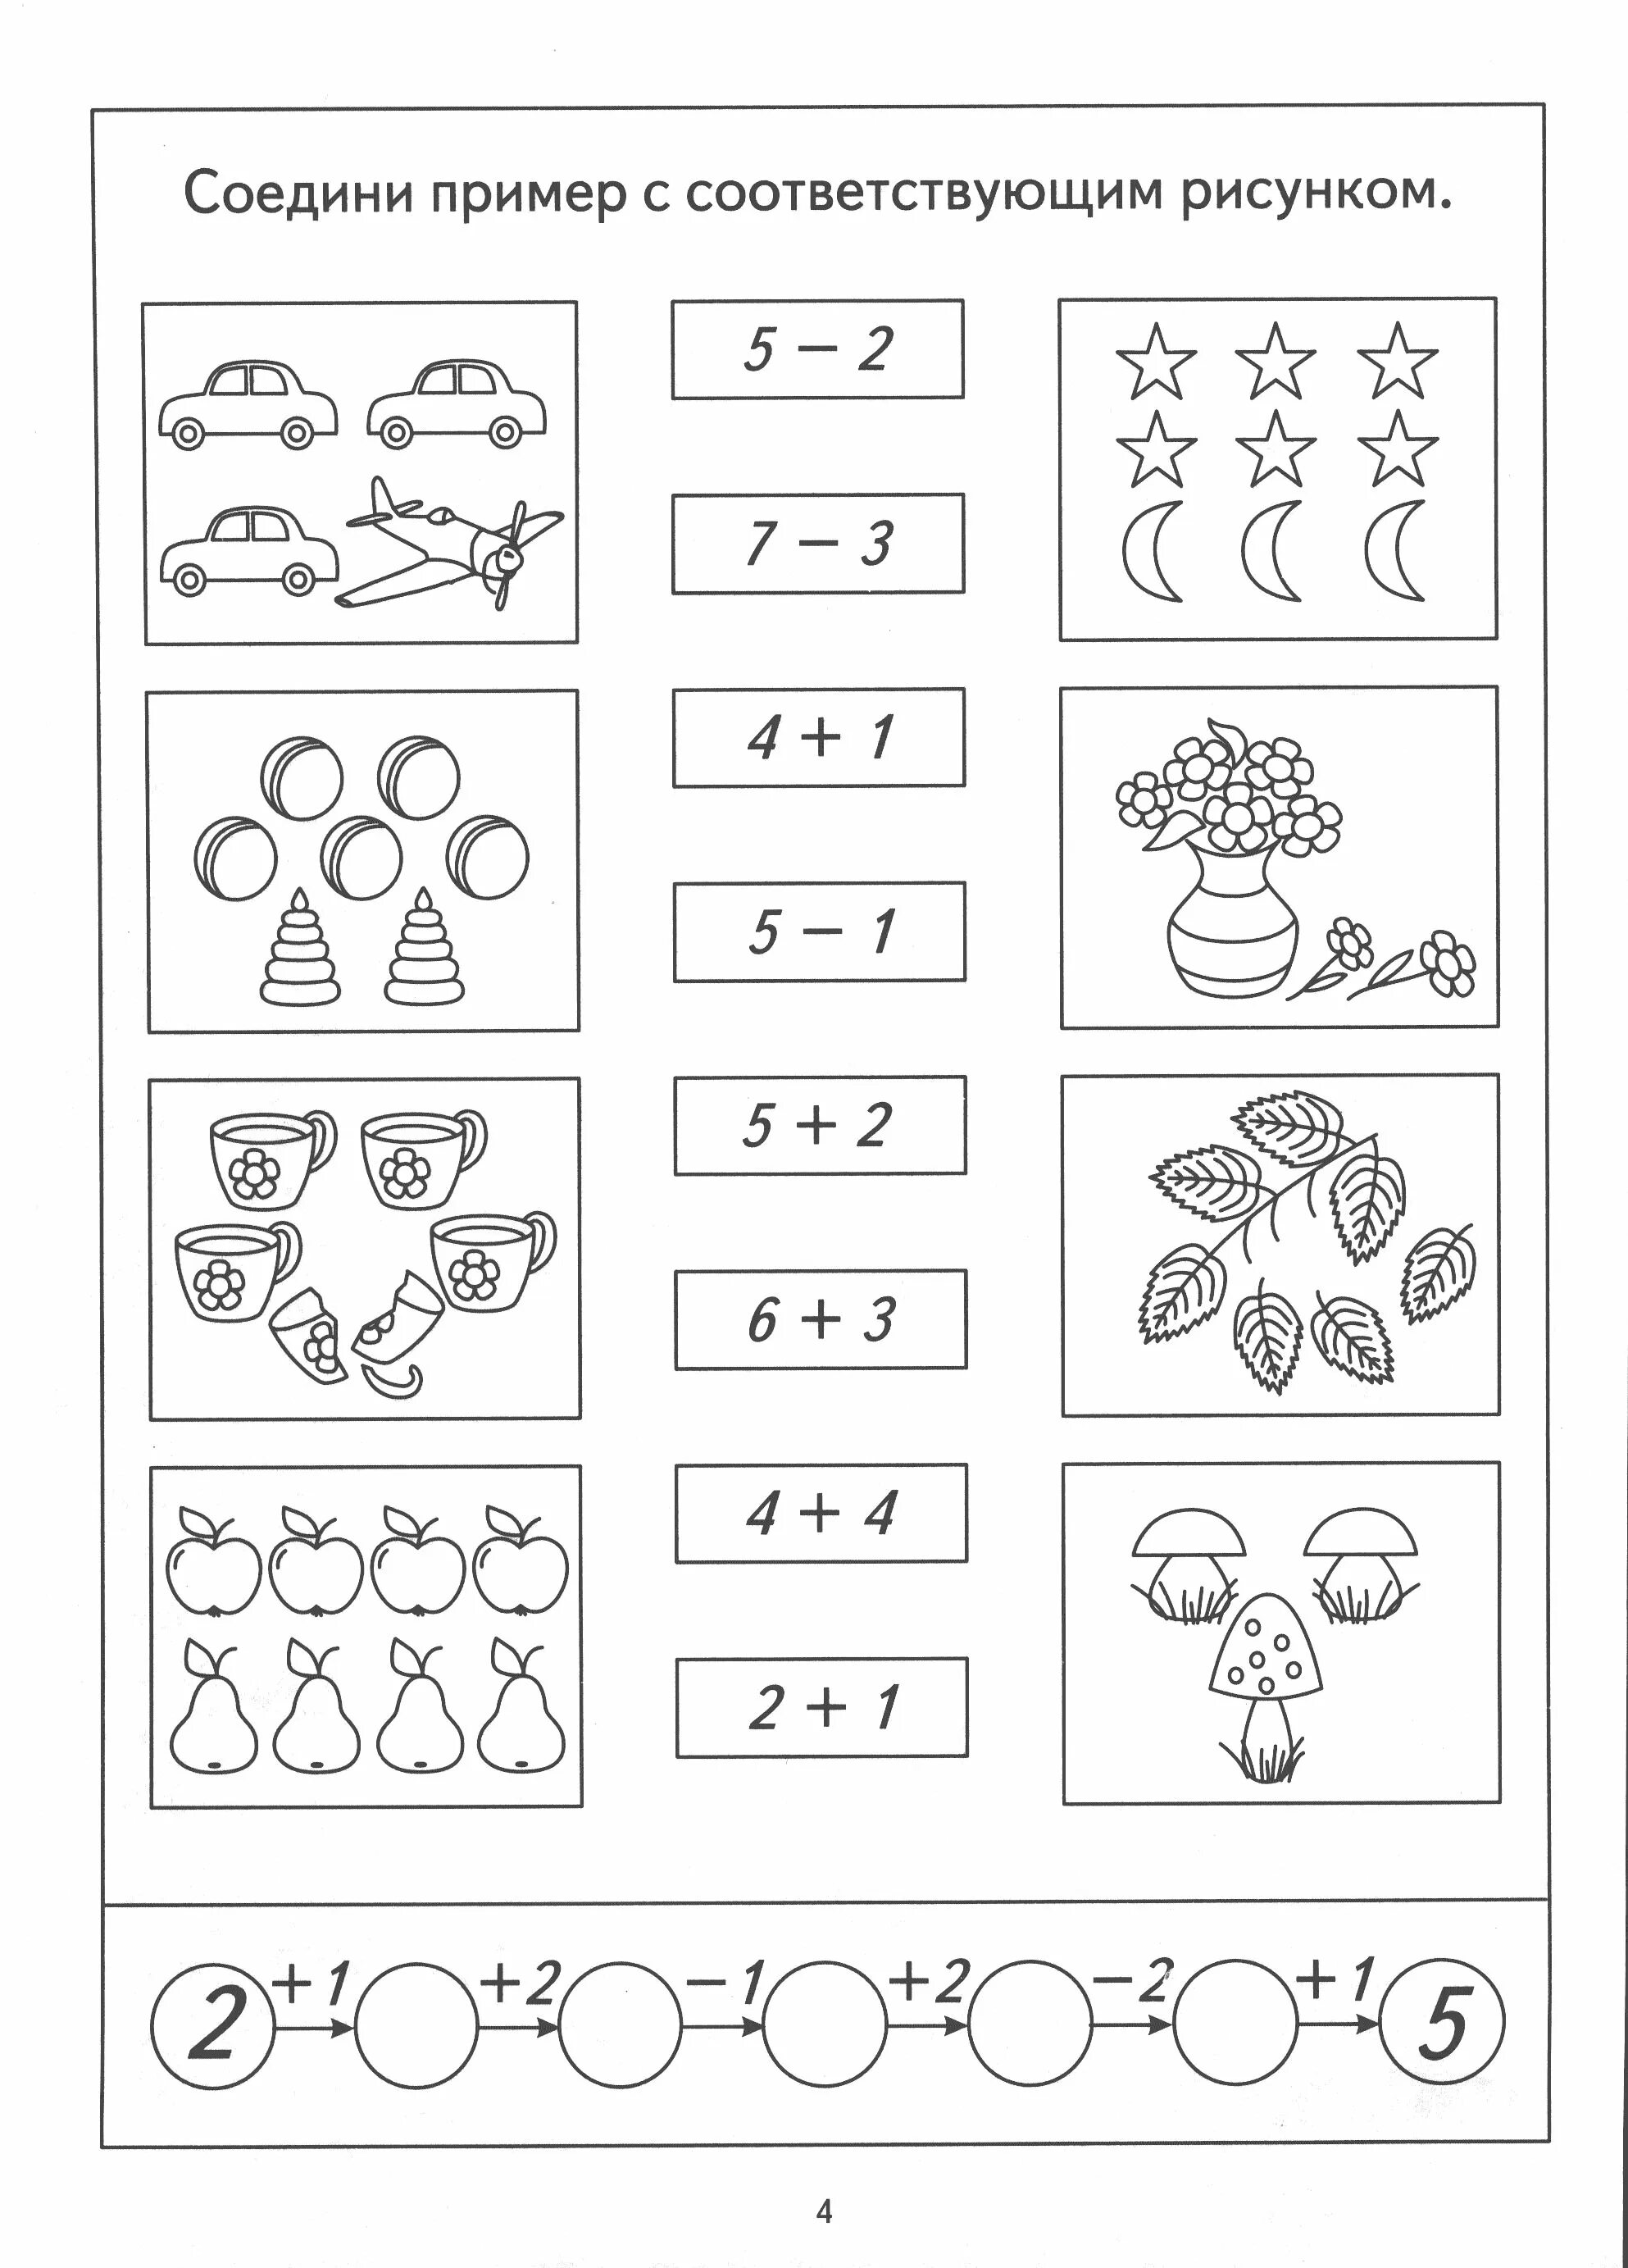 Задания по математике решение примеров для дошкольников. Задания на сложение и вычитание для детей 6-7 лет. Задания для дошкольников задачи на сложение и вычитание. Задачки на сложение и вычитание для дошкольников.